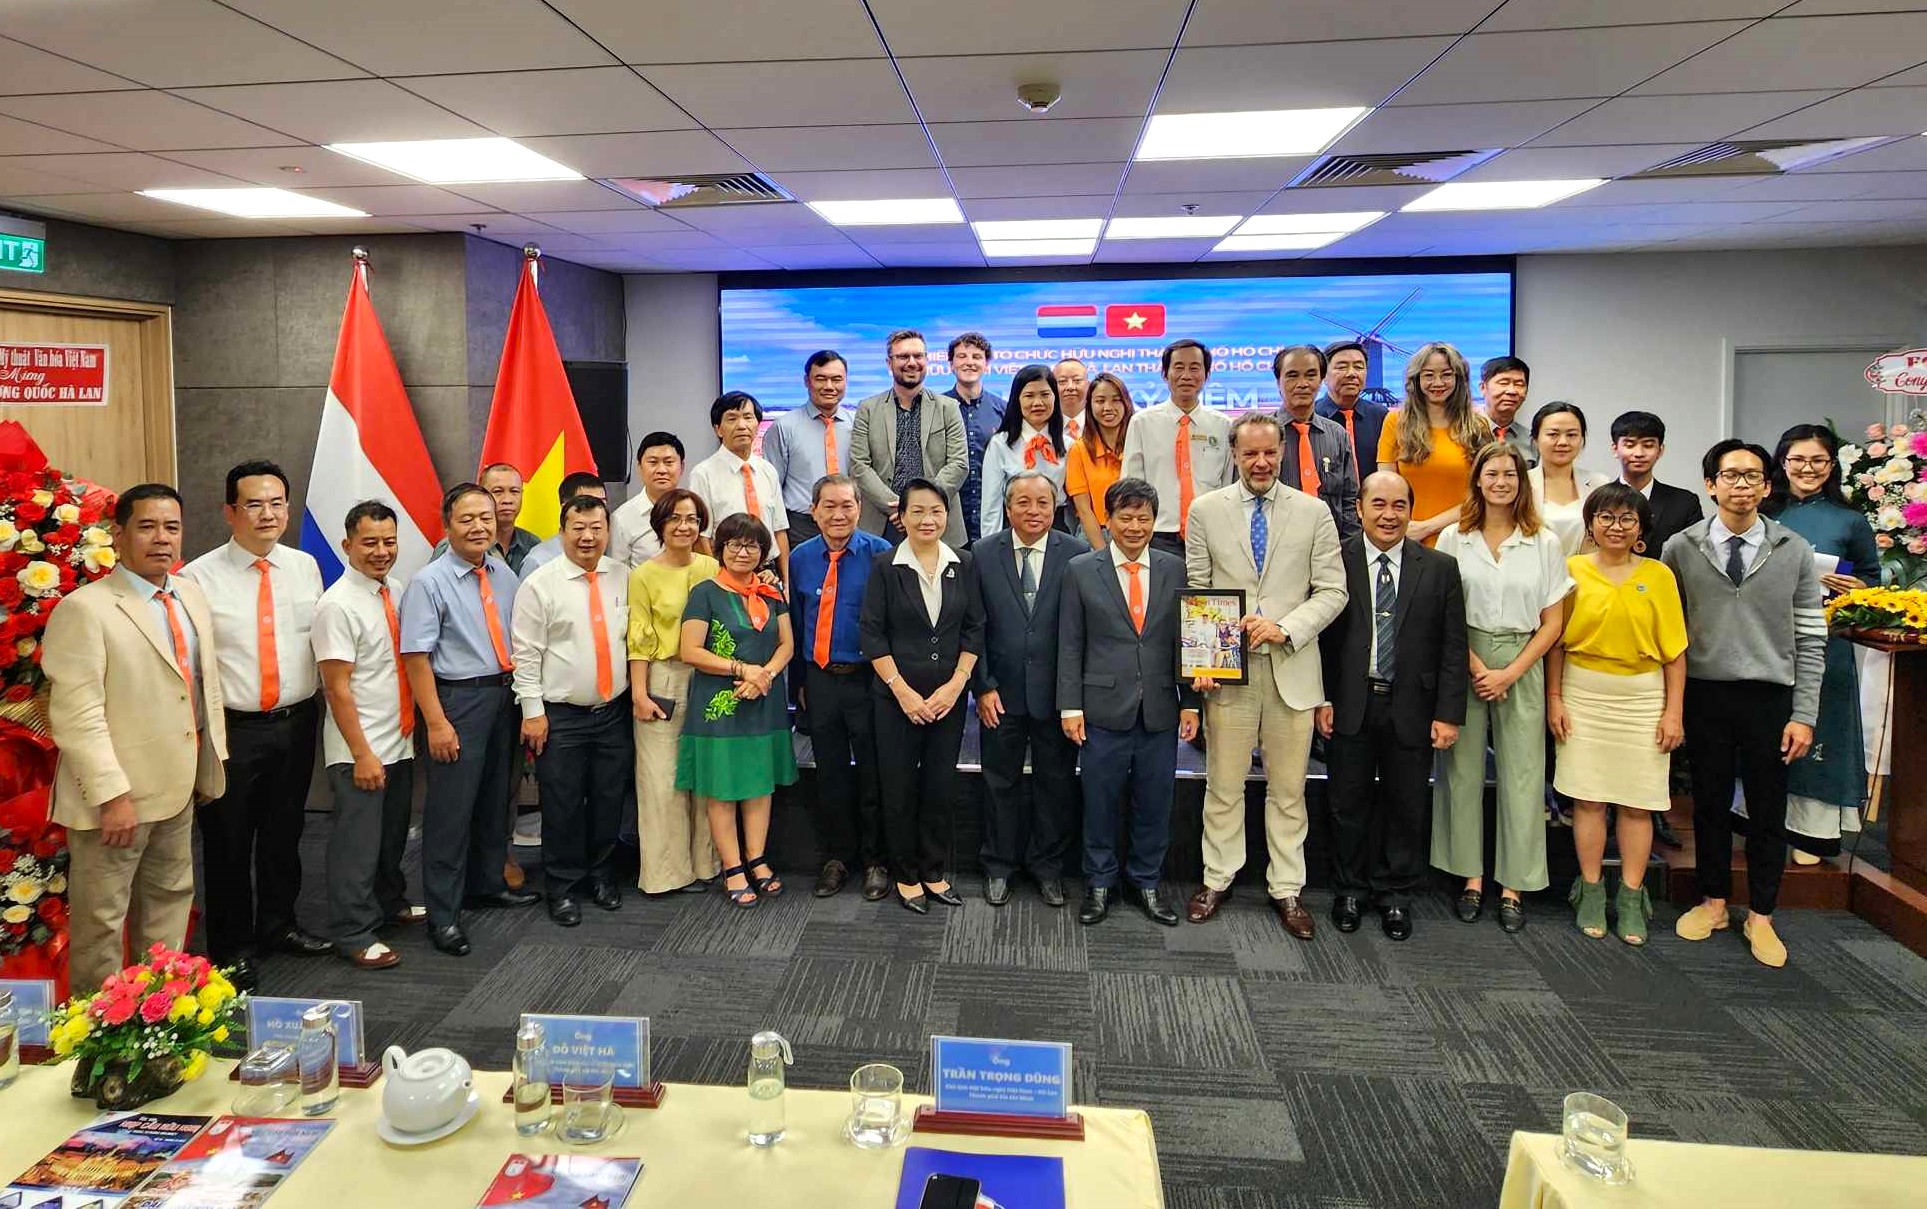 Phái đoàn Tổng lãnh sự Vương quốc Hà Lan tại TPHCM và các đại biểu chụp hình lưu niệm trong buổi họp mặt mừng Quốc khánh Hà Lan